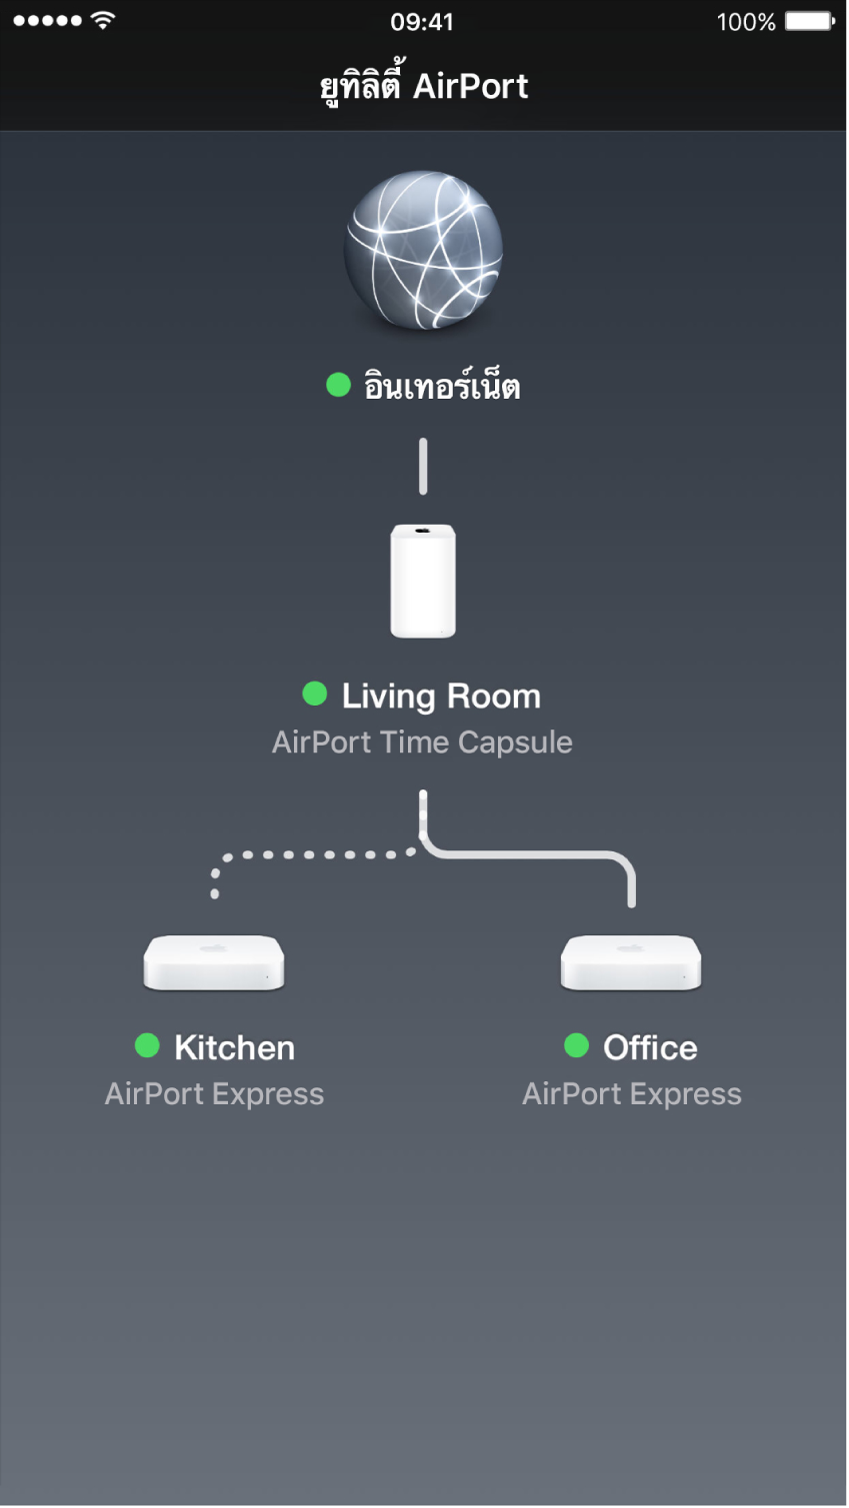 ภาพรวมแบบกราฟิกในยูทิลิตี้ AirPort สำหรับ iOS